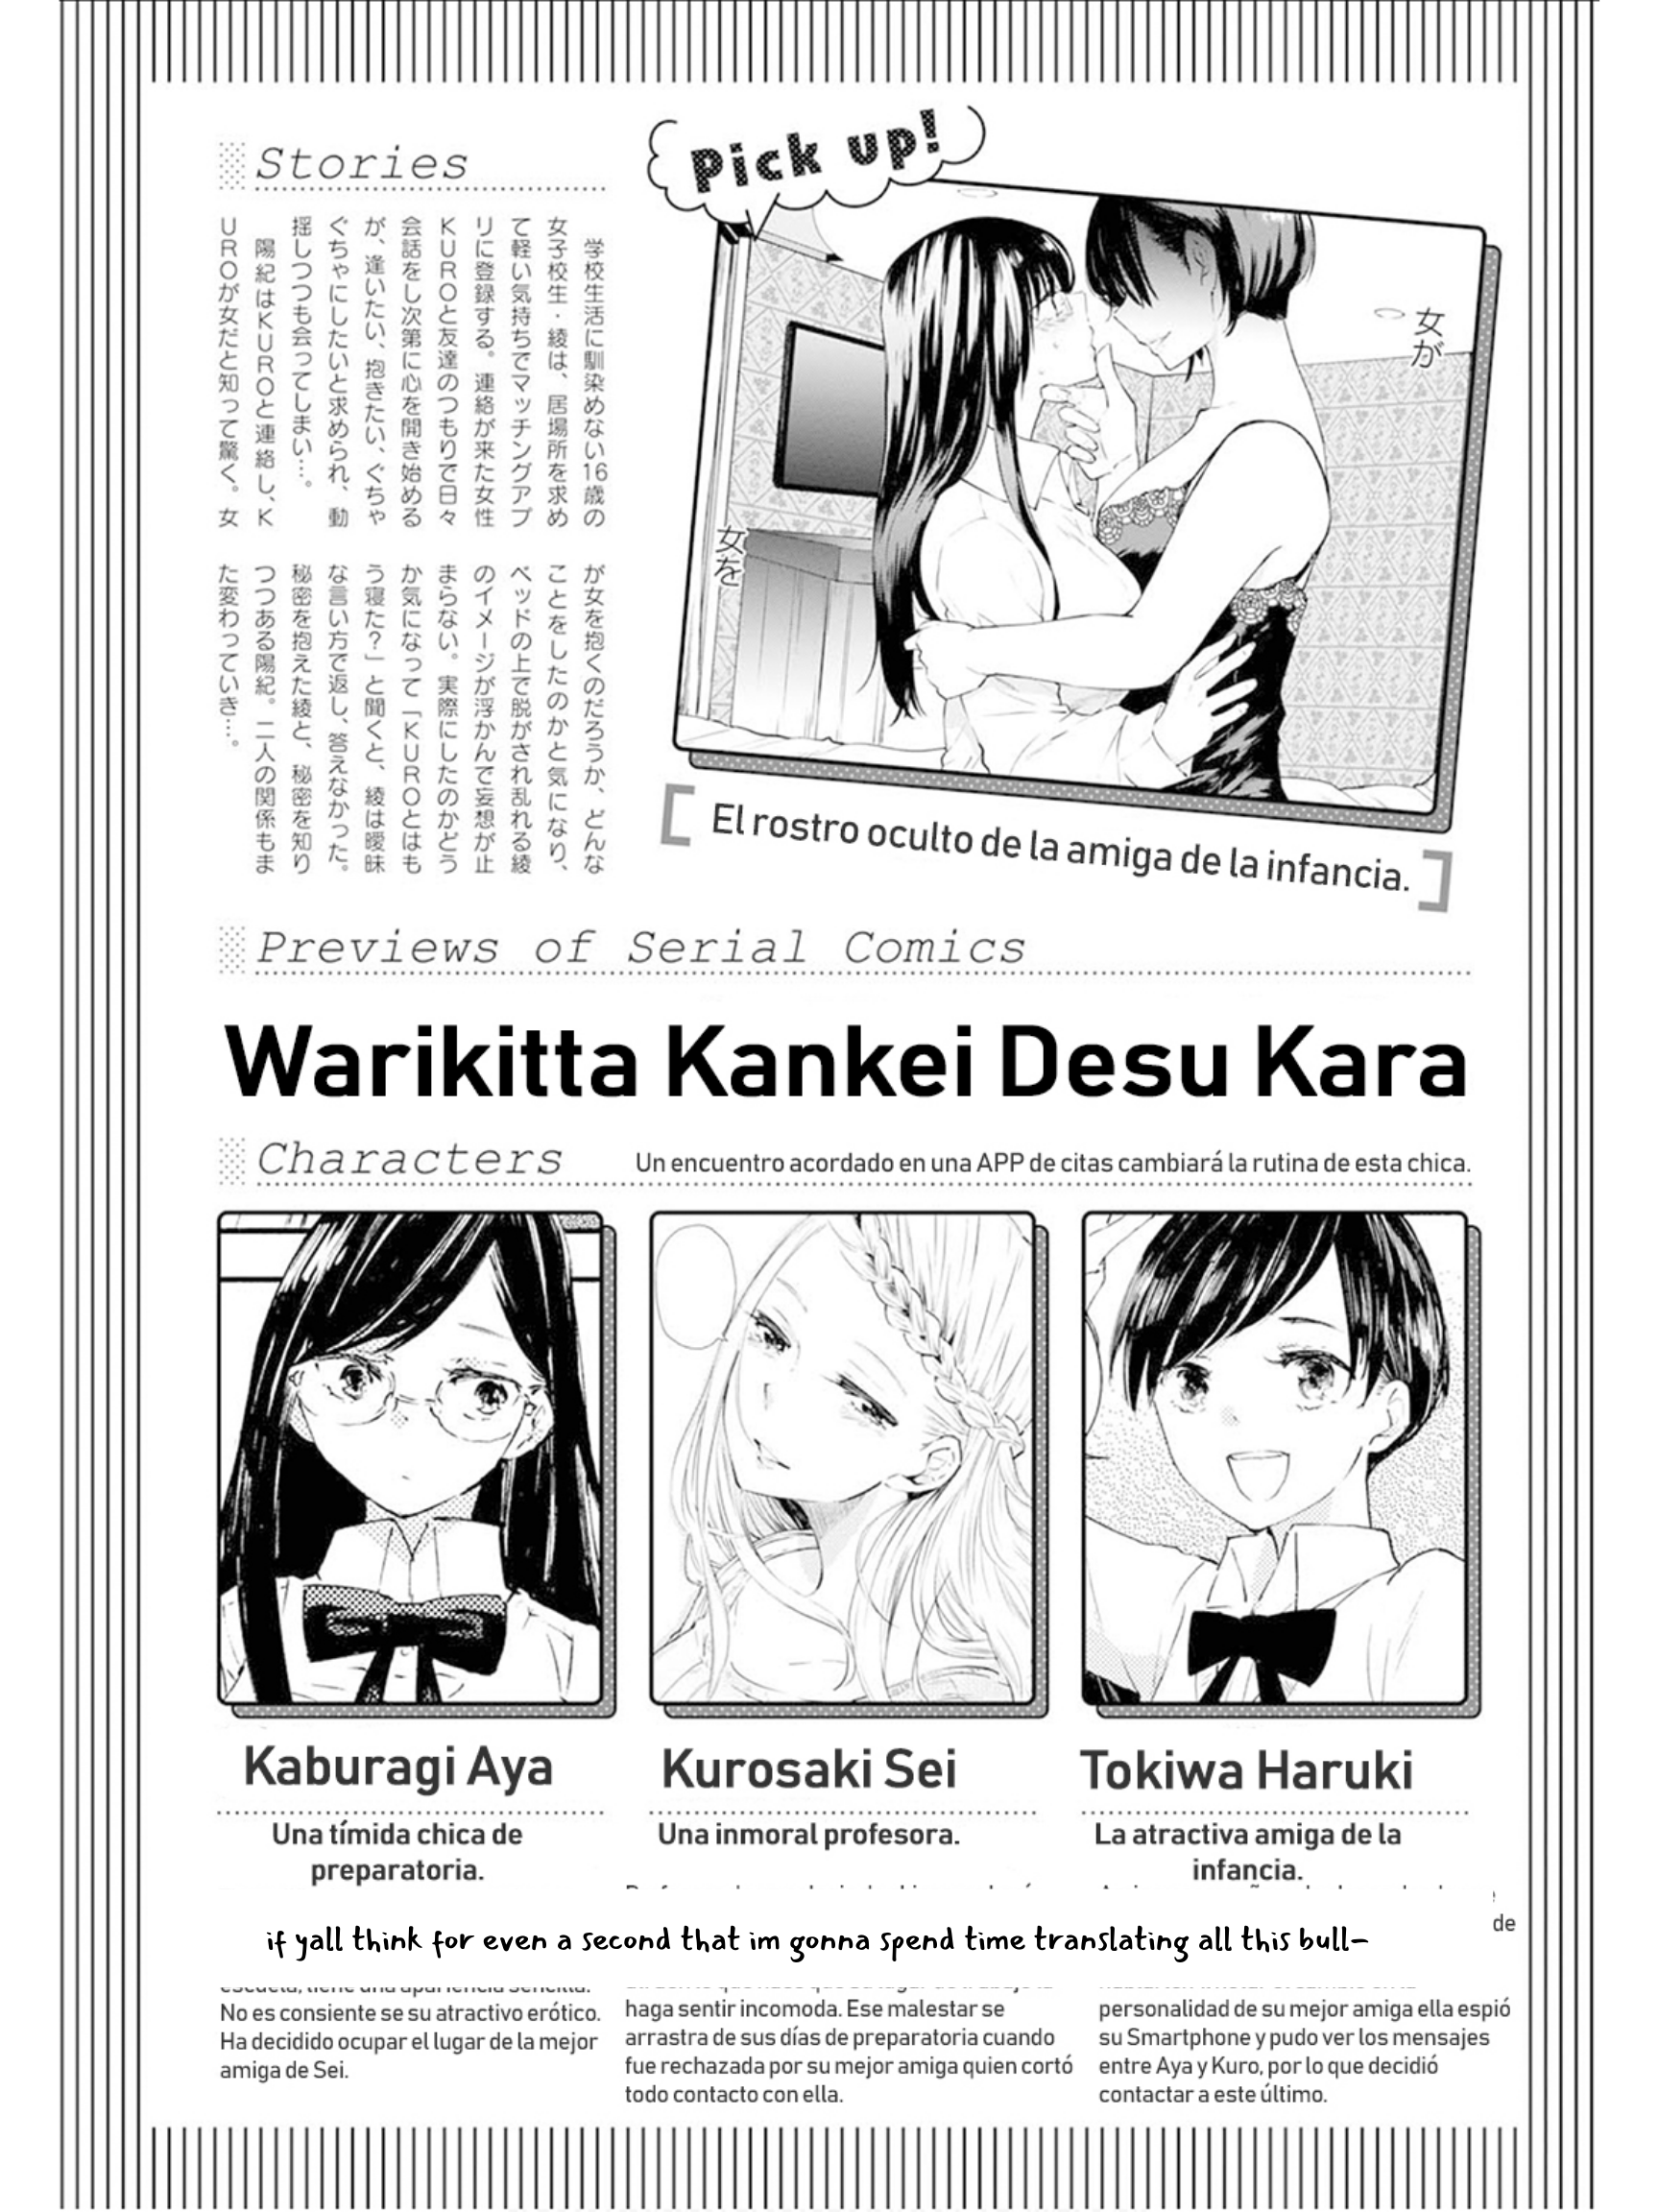 Warikitta Kankei Desukara. - Page 1